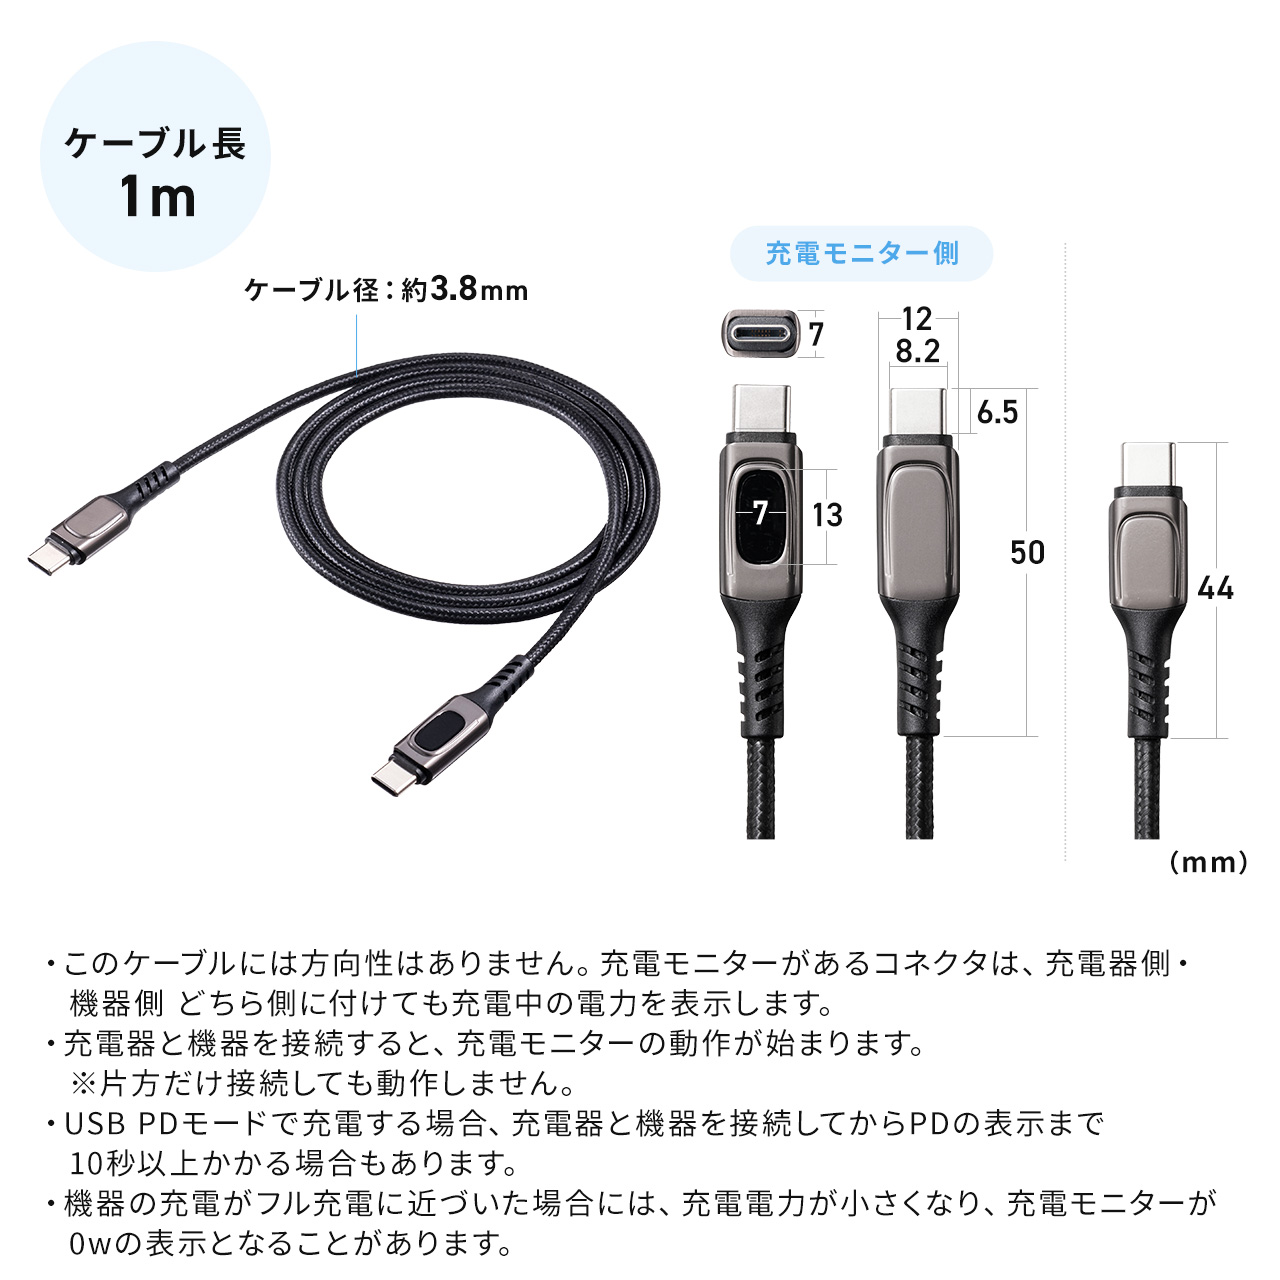 PD電力表示機能付き USB Type-Cケーブル PD100W対応 e-marker搭載 USB2.0 1m 高耐久 ポリエチレンメッシュケーブル 充電 データ転送 スマホ タブレット ブラック 500-USB076